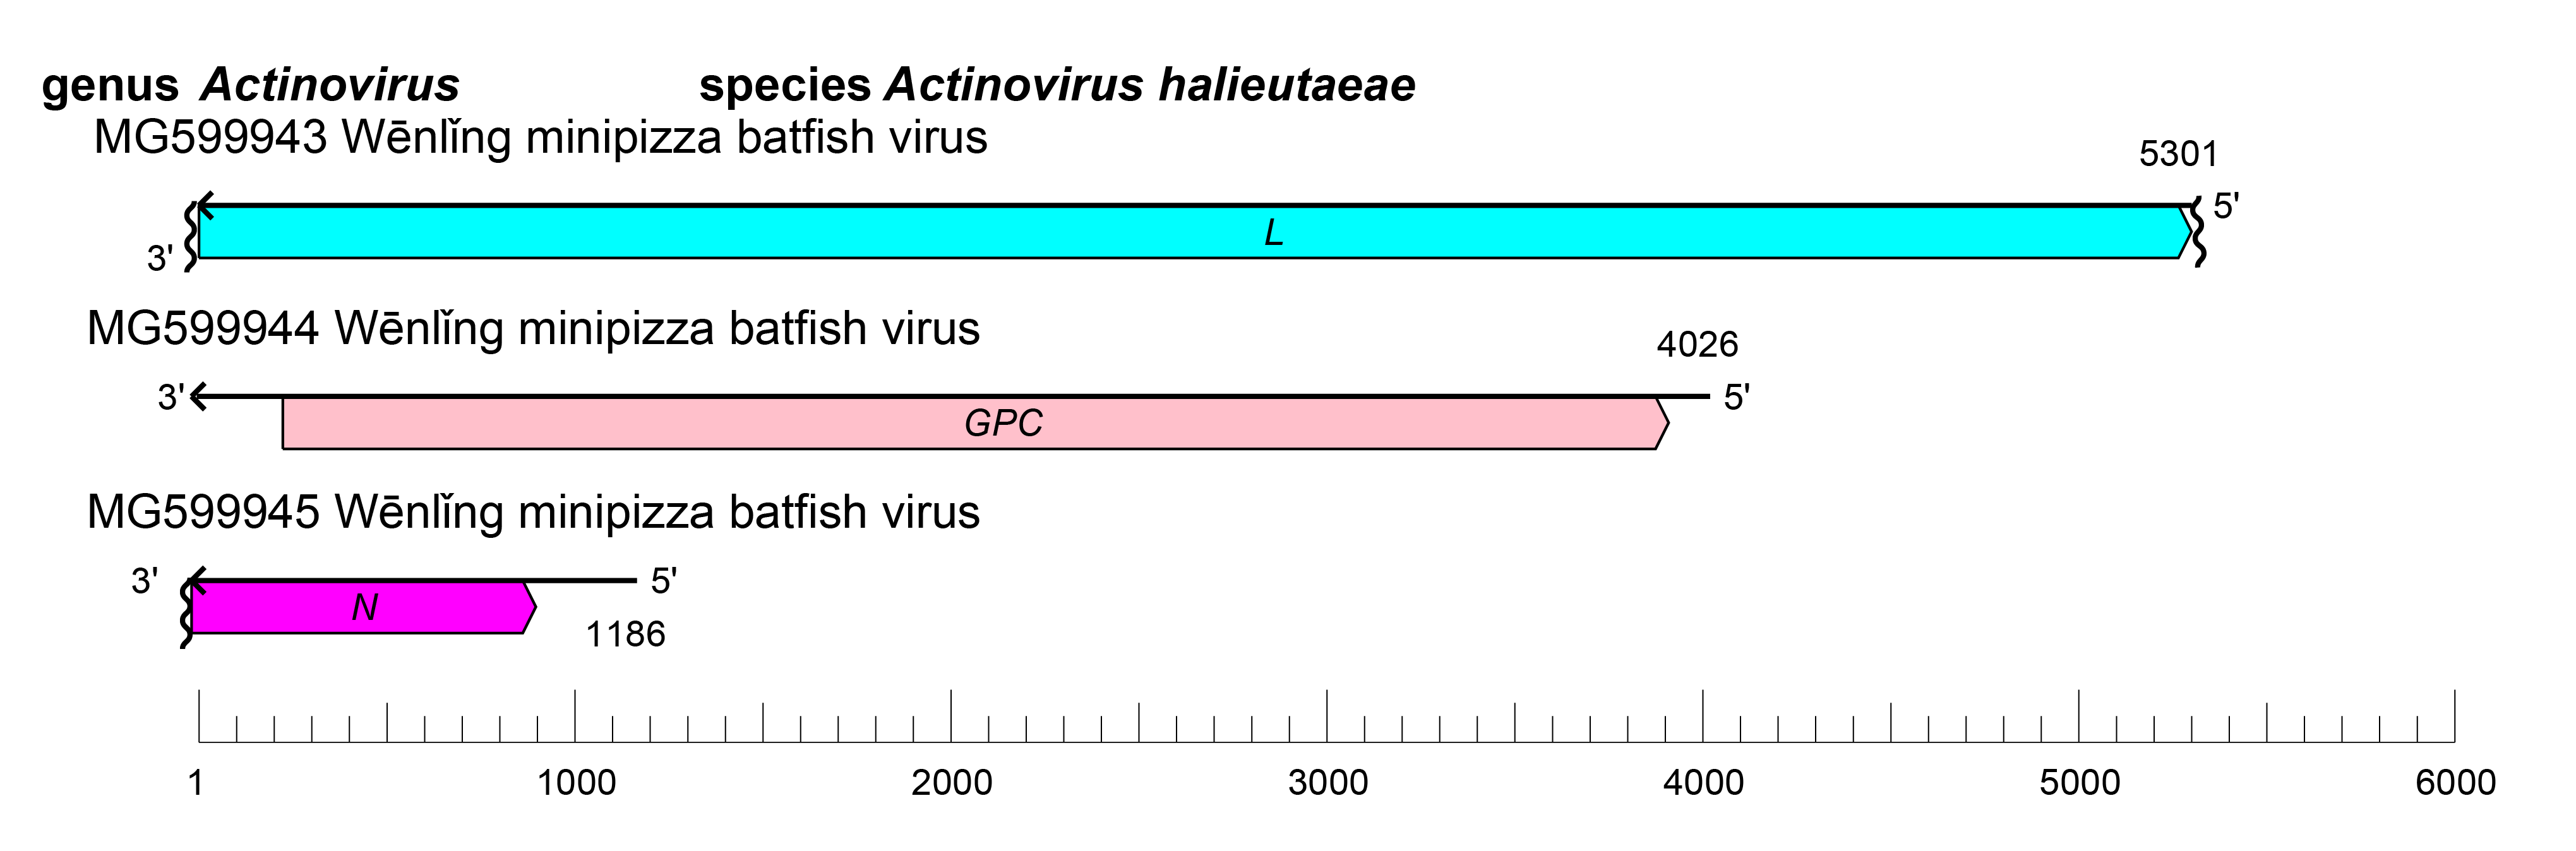 Actinovirus genome